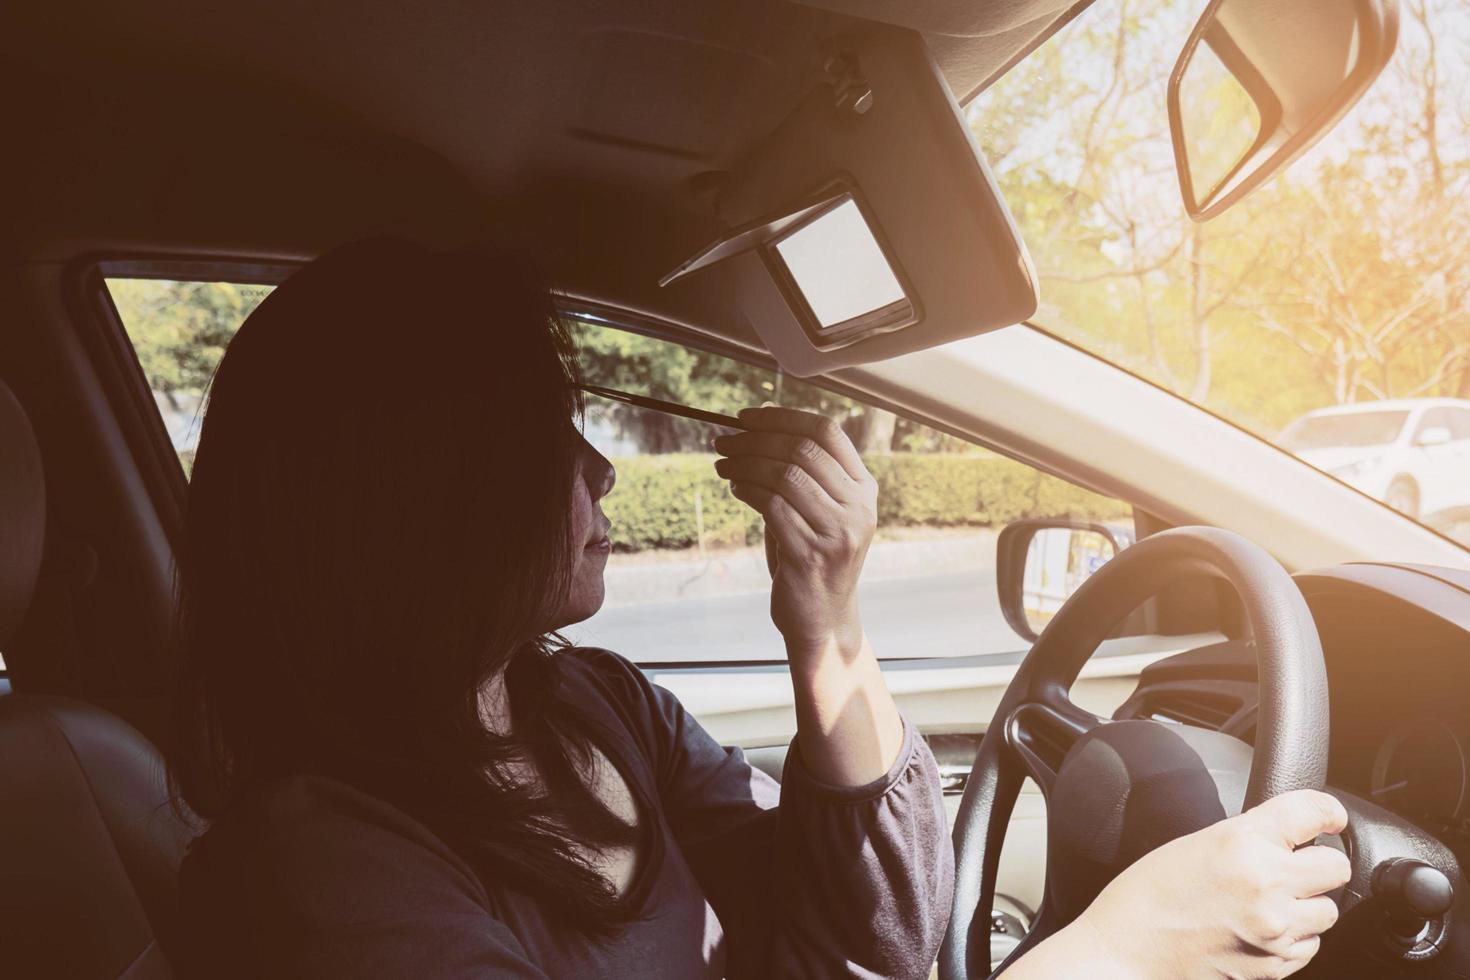 vrouw make-up haar gezicht met wenkbrauwpotlood tijdens het autorijden, onveilig gedrag foto